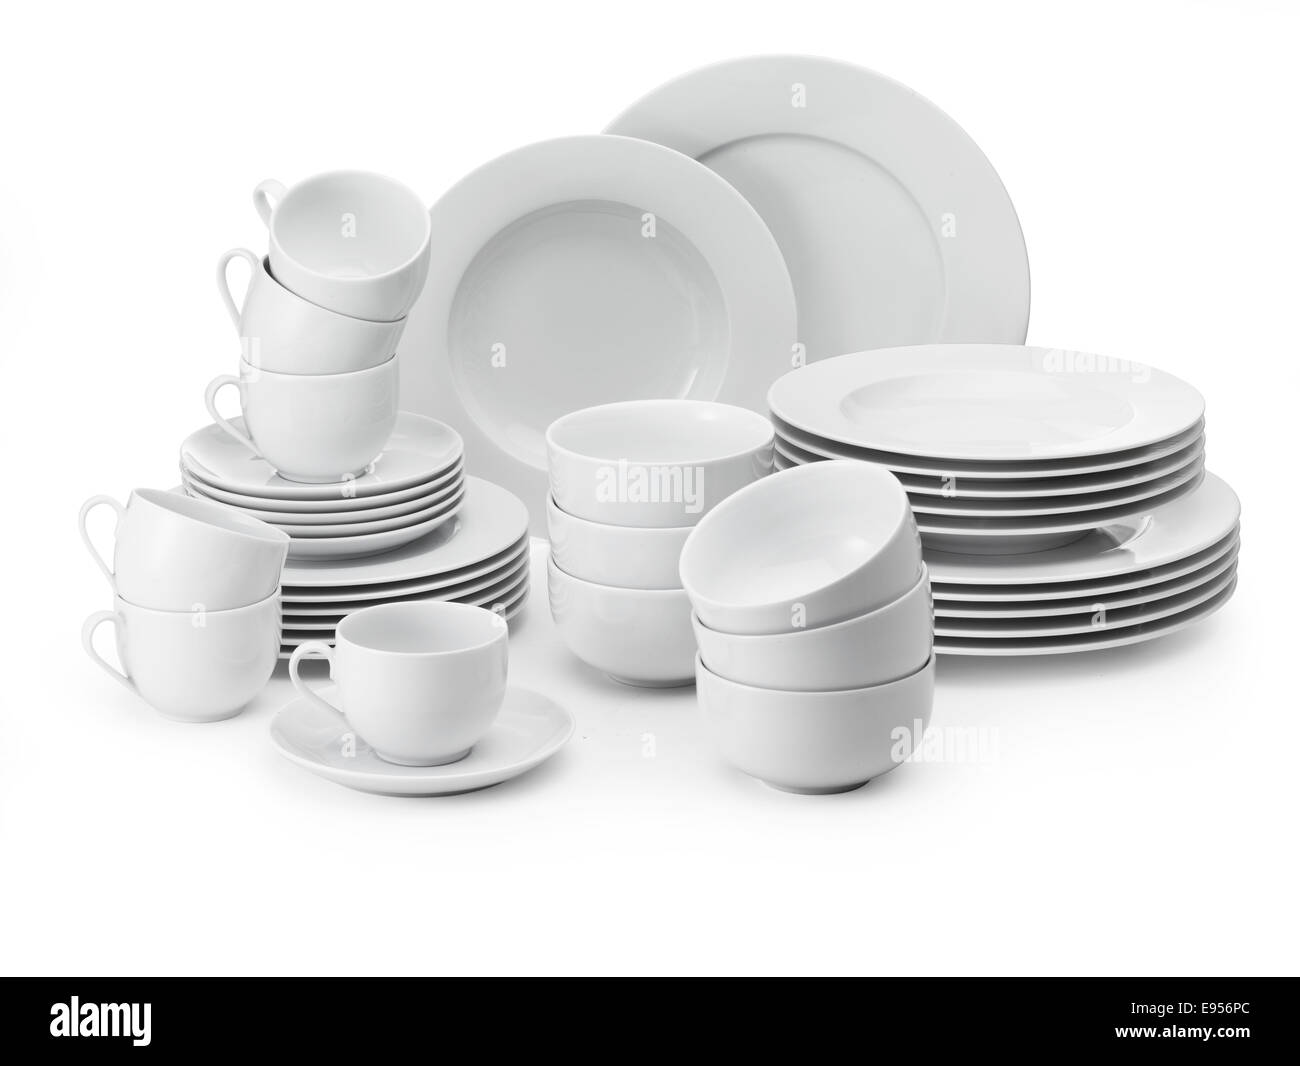 Vaisselle blanche, tasses, assiettes, bols Banque D'Images